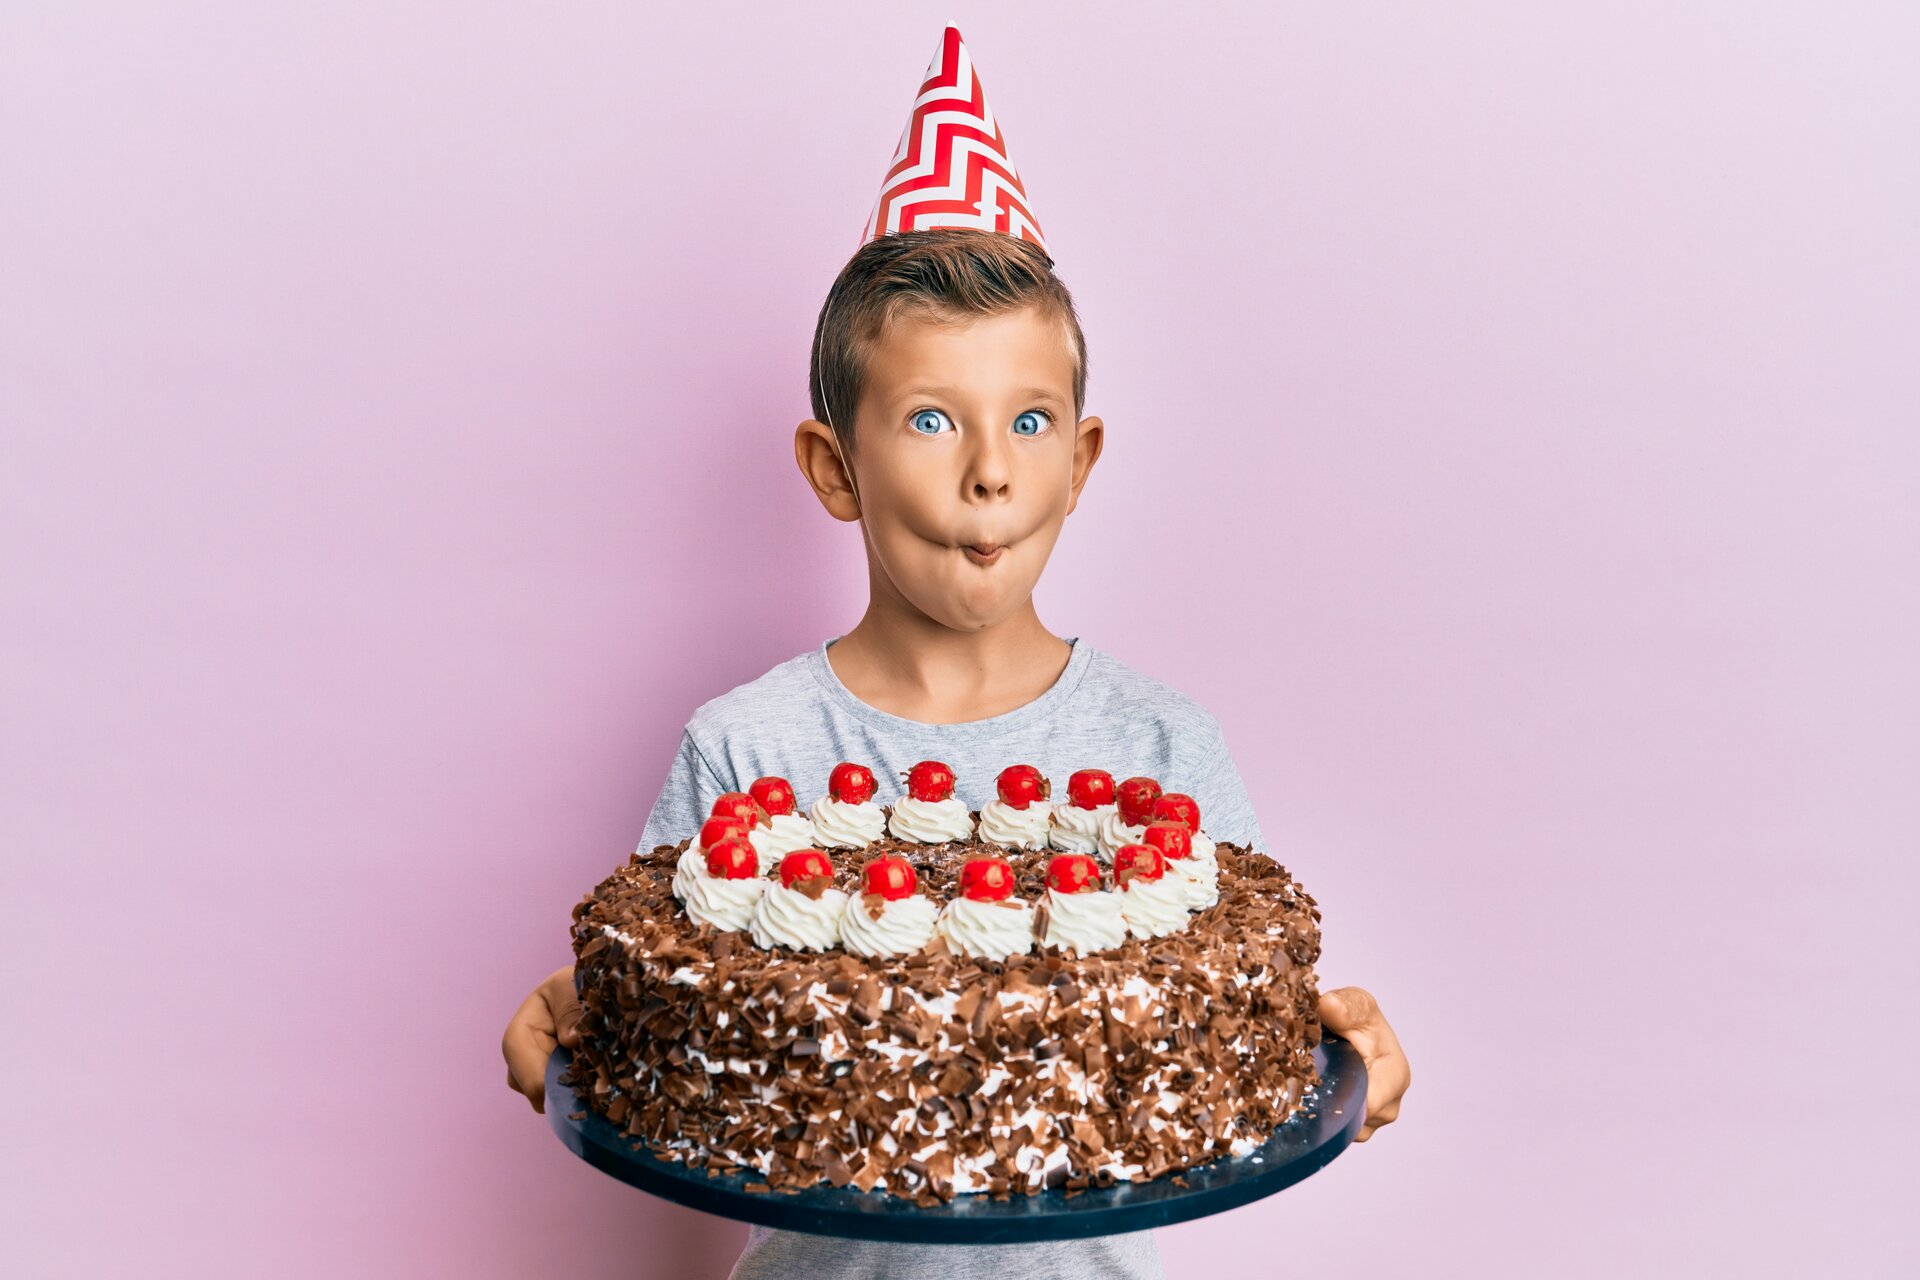 Kind, das Geburtstag mit Kuchen feiert und Fischgesicht mit Mund und schielenden Augen macht.